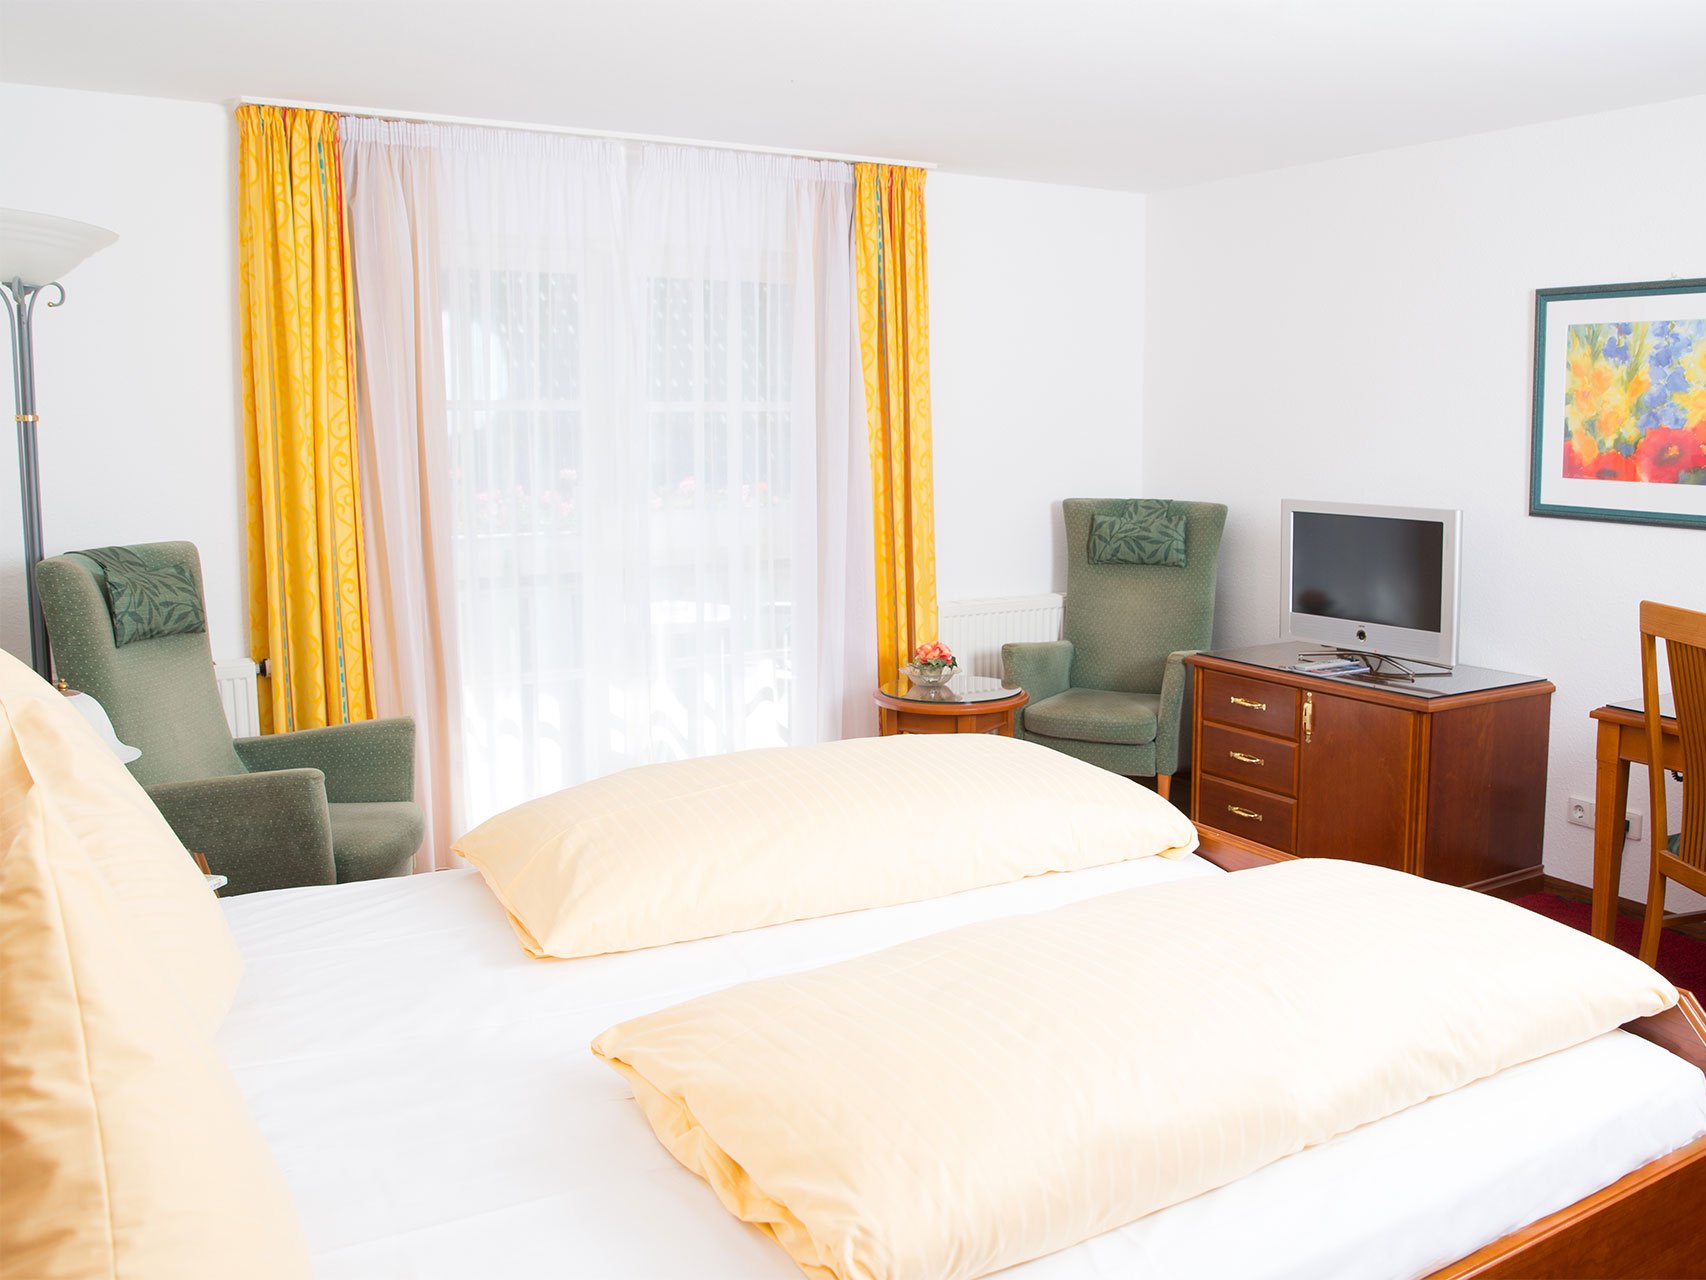 Doppelzimmer Kategorie 1 des Hotels Seeperle am Bodensee.